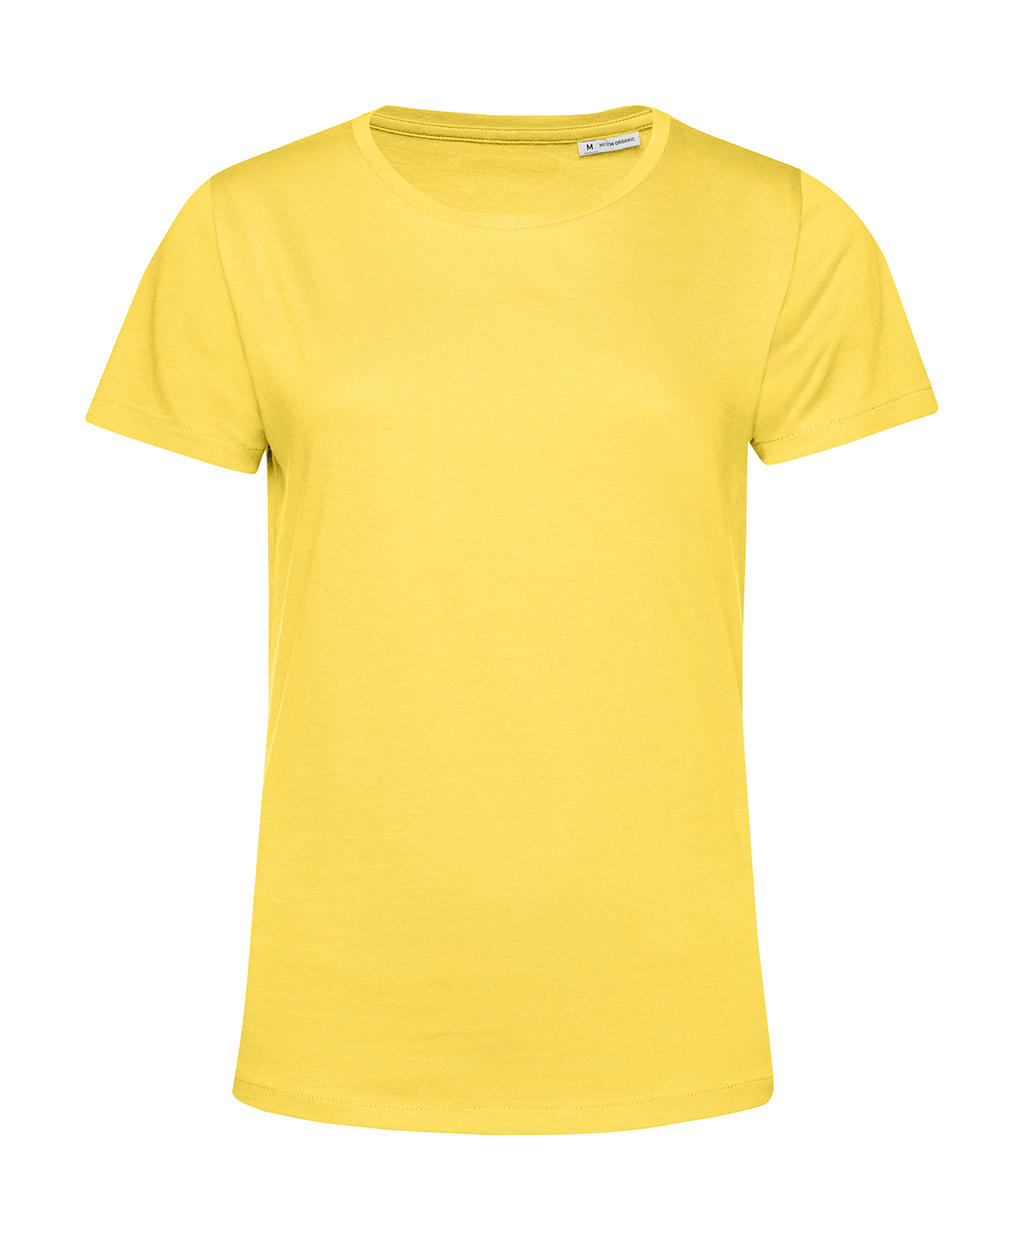 Tričko dámské BC Organic Inspire E150 - žluté, XXL